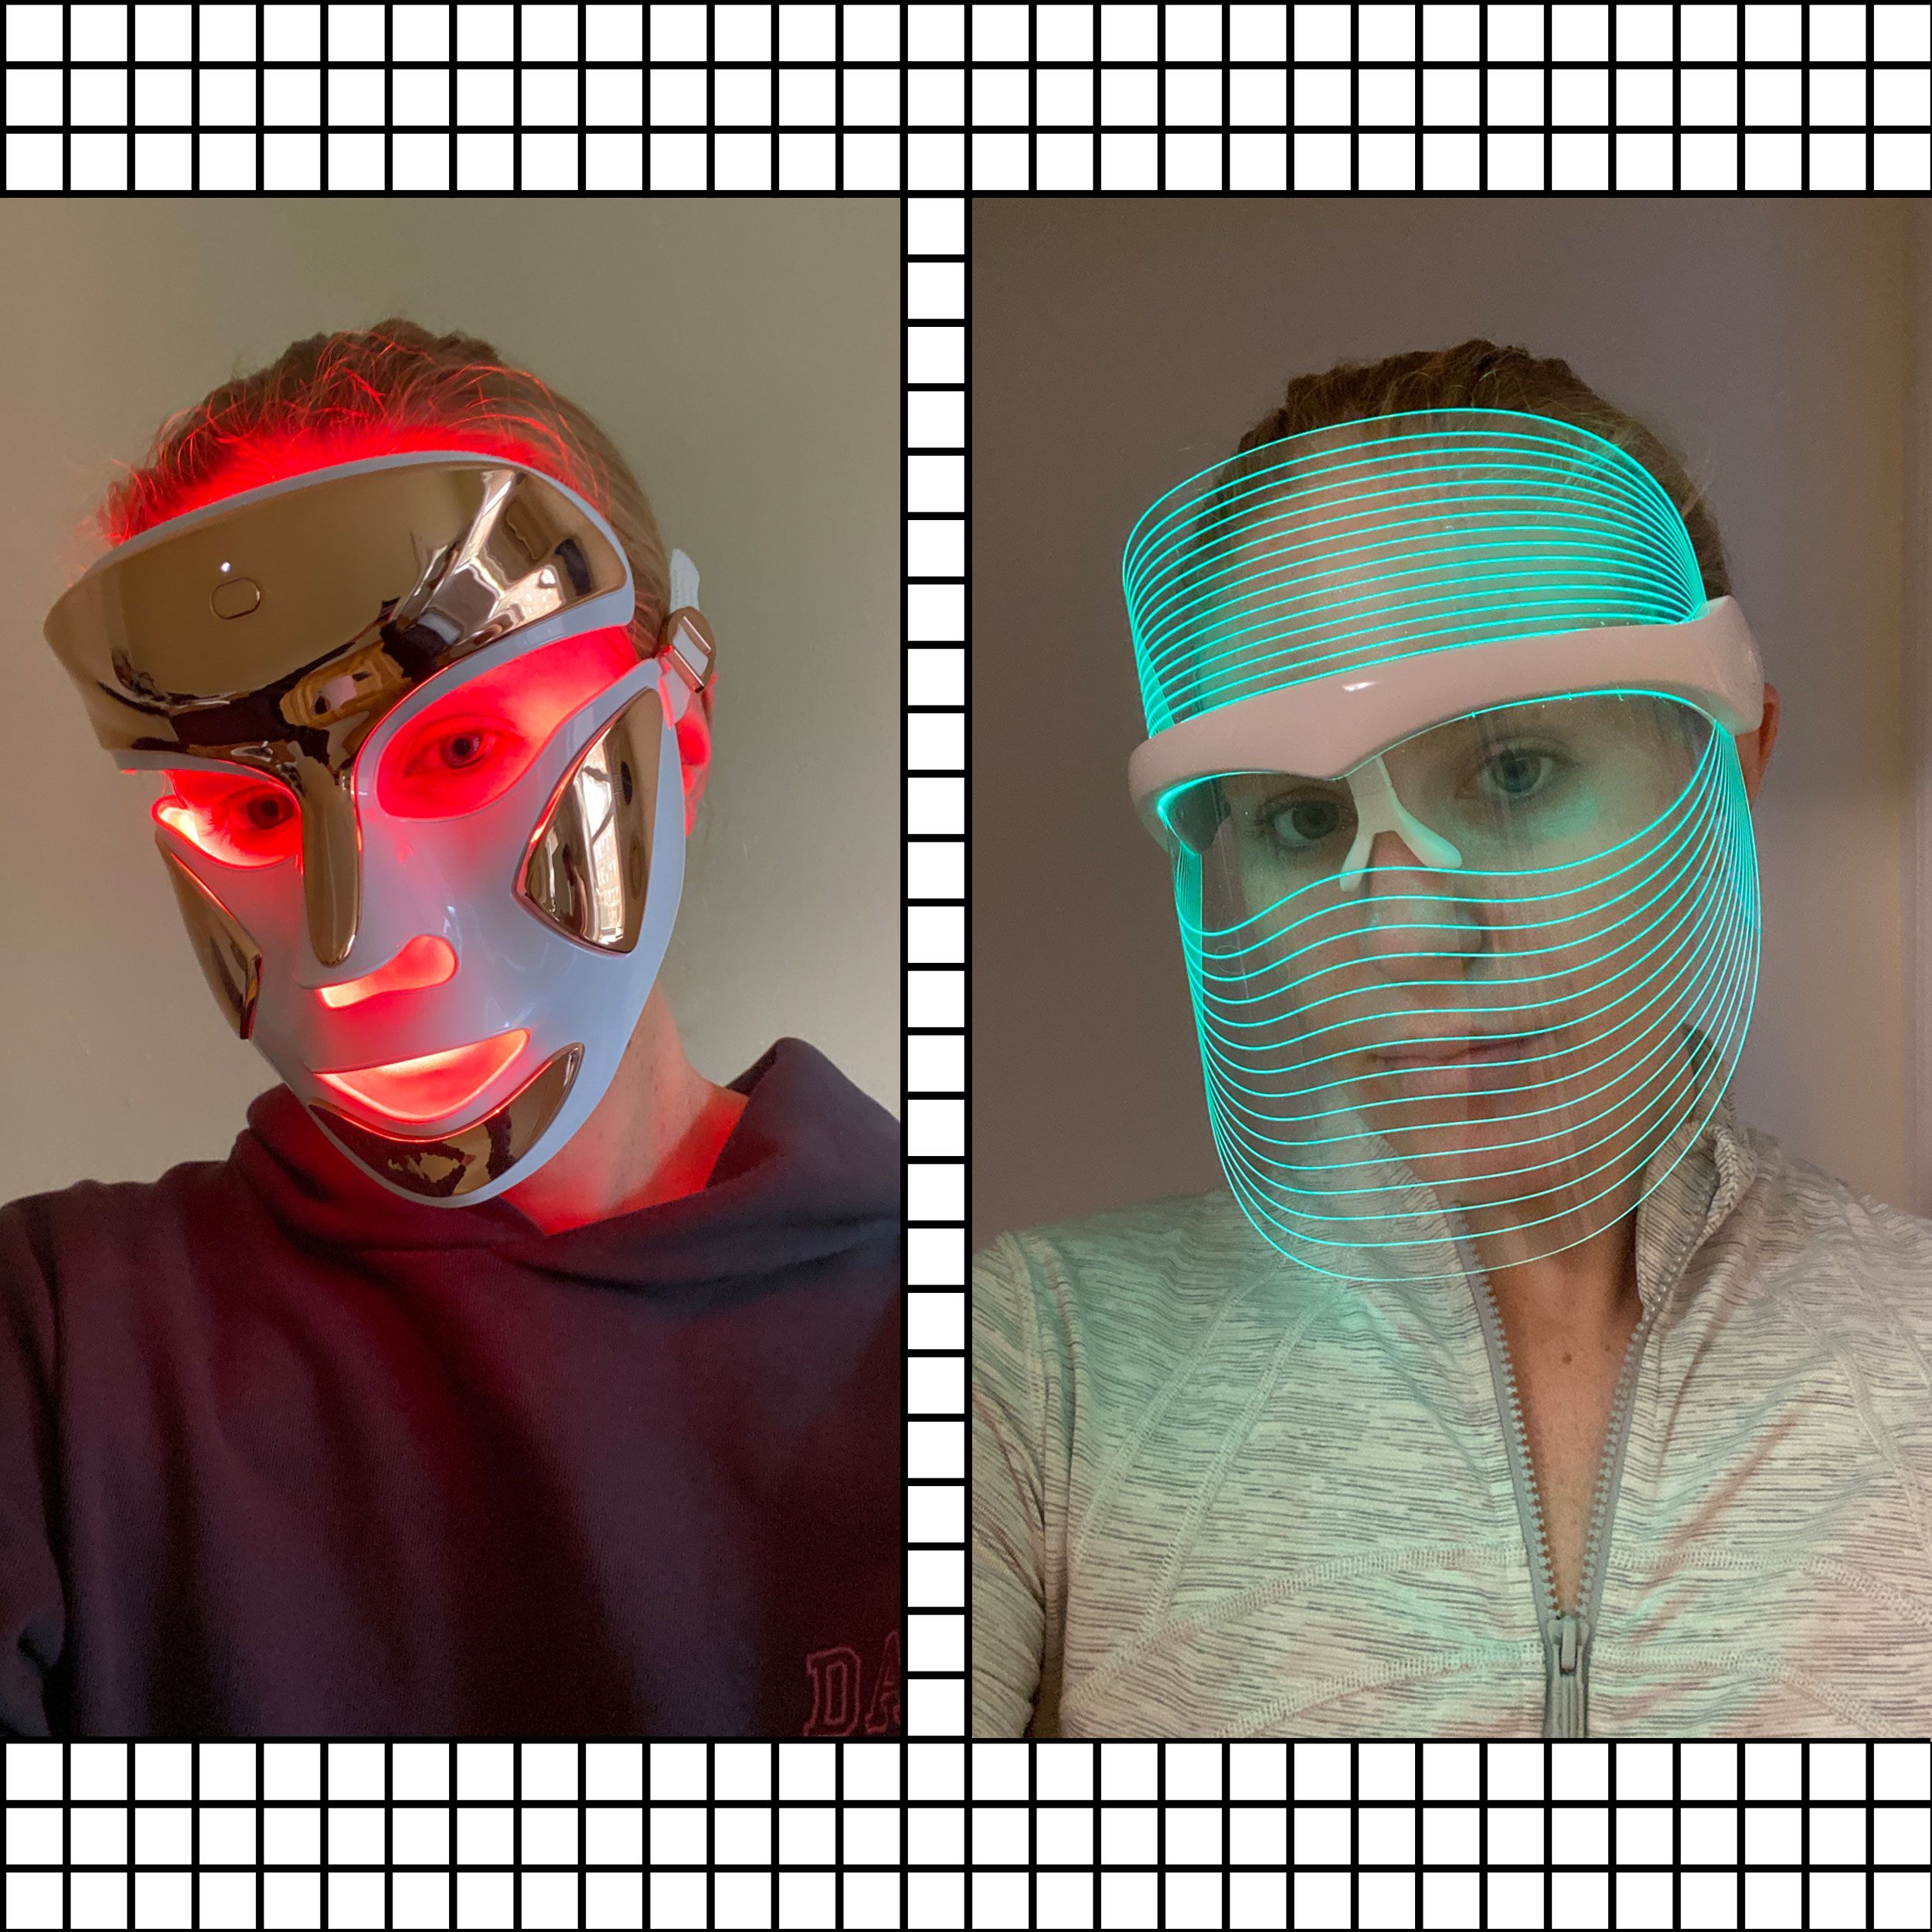 https://pyxis.nymag.com/v1/imgs/c0b/36f/d0a7d98e0ced4d05884bb8eb30f5f7d5fc-face-masks-lede.jpg